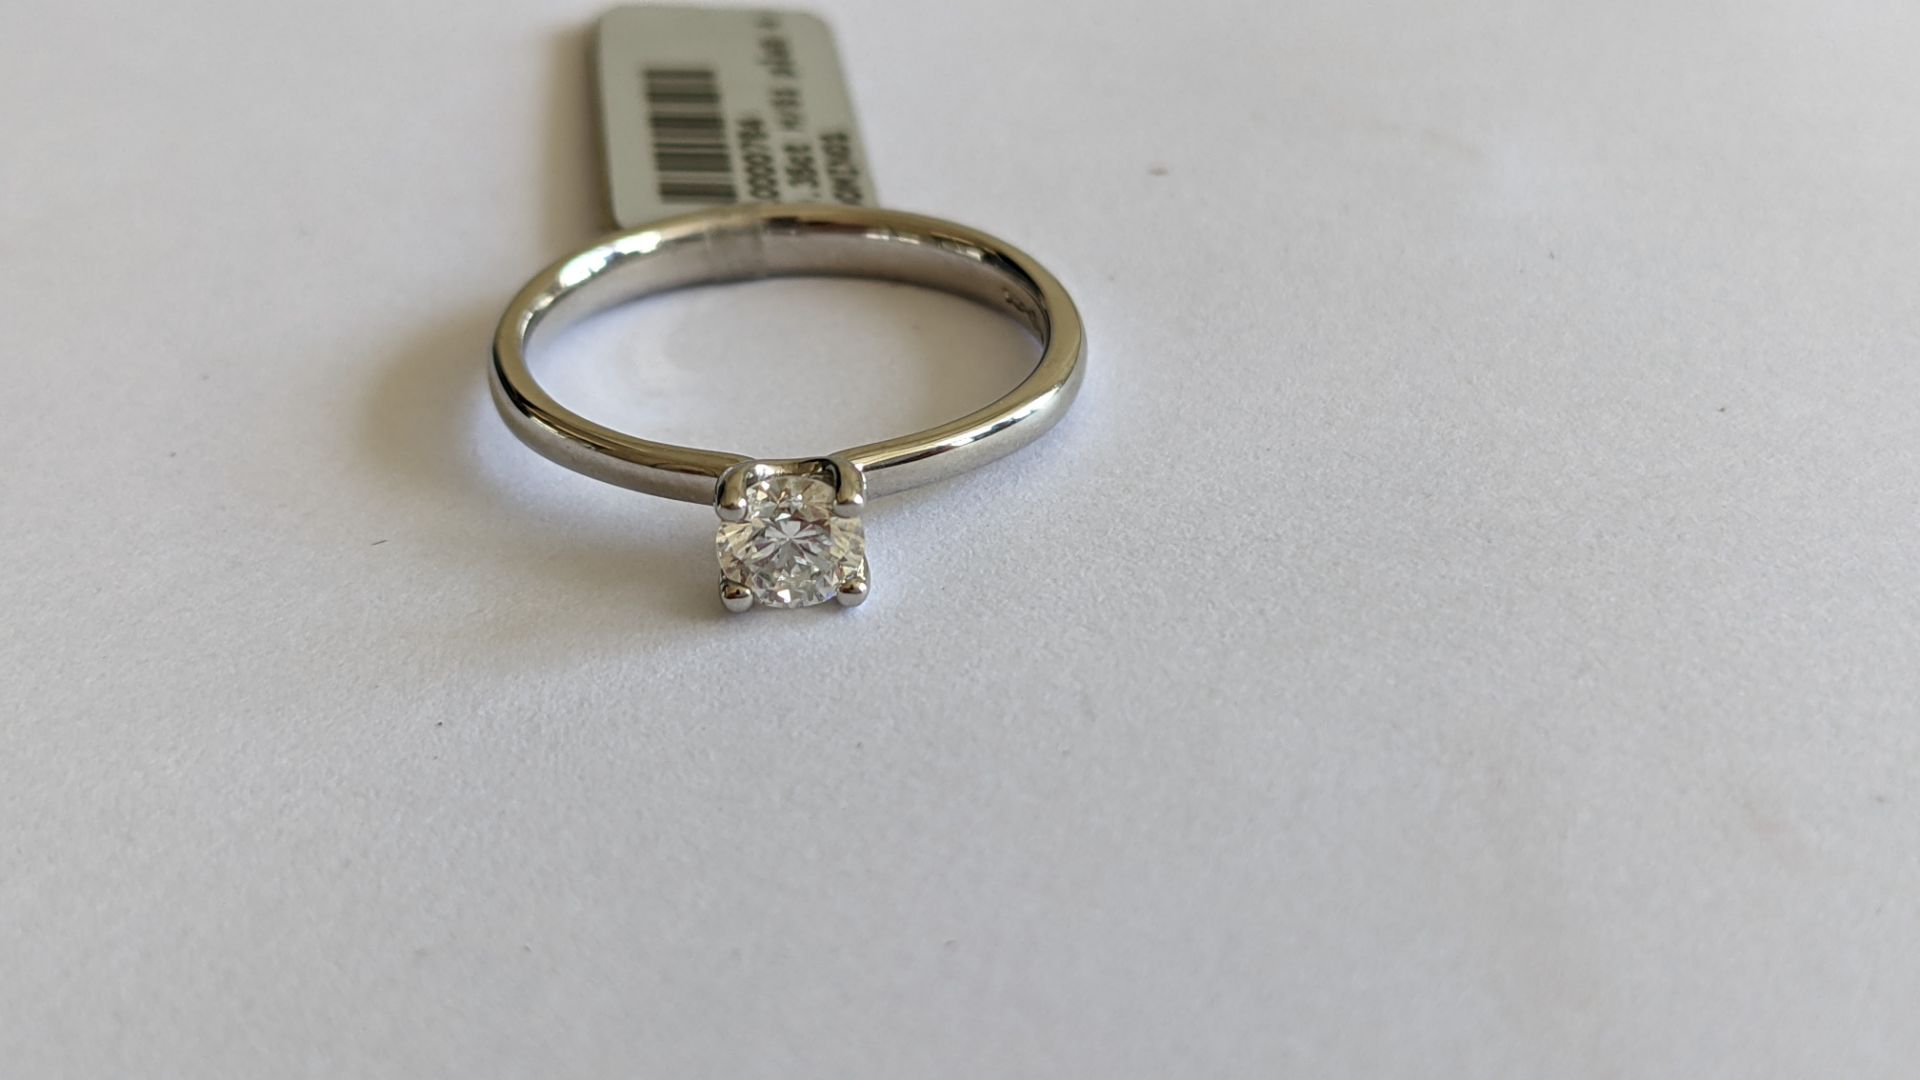 Single stone diamond & platinum 950 ring with 0.35ct H/Si diamond, RRP £1,507 - Image 27 of 29